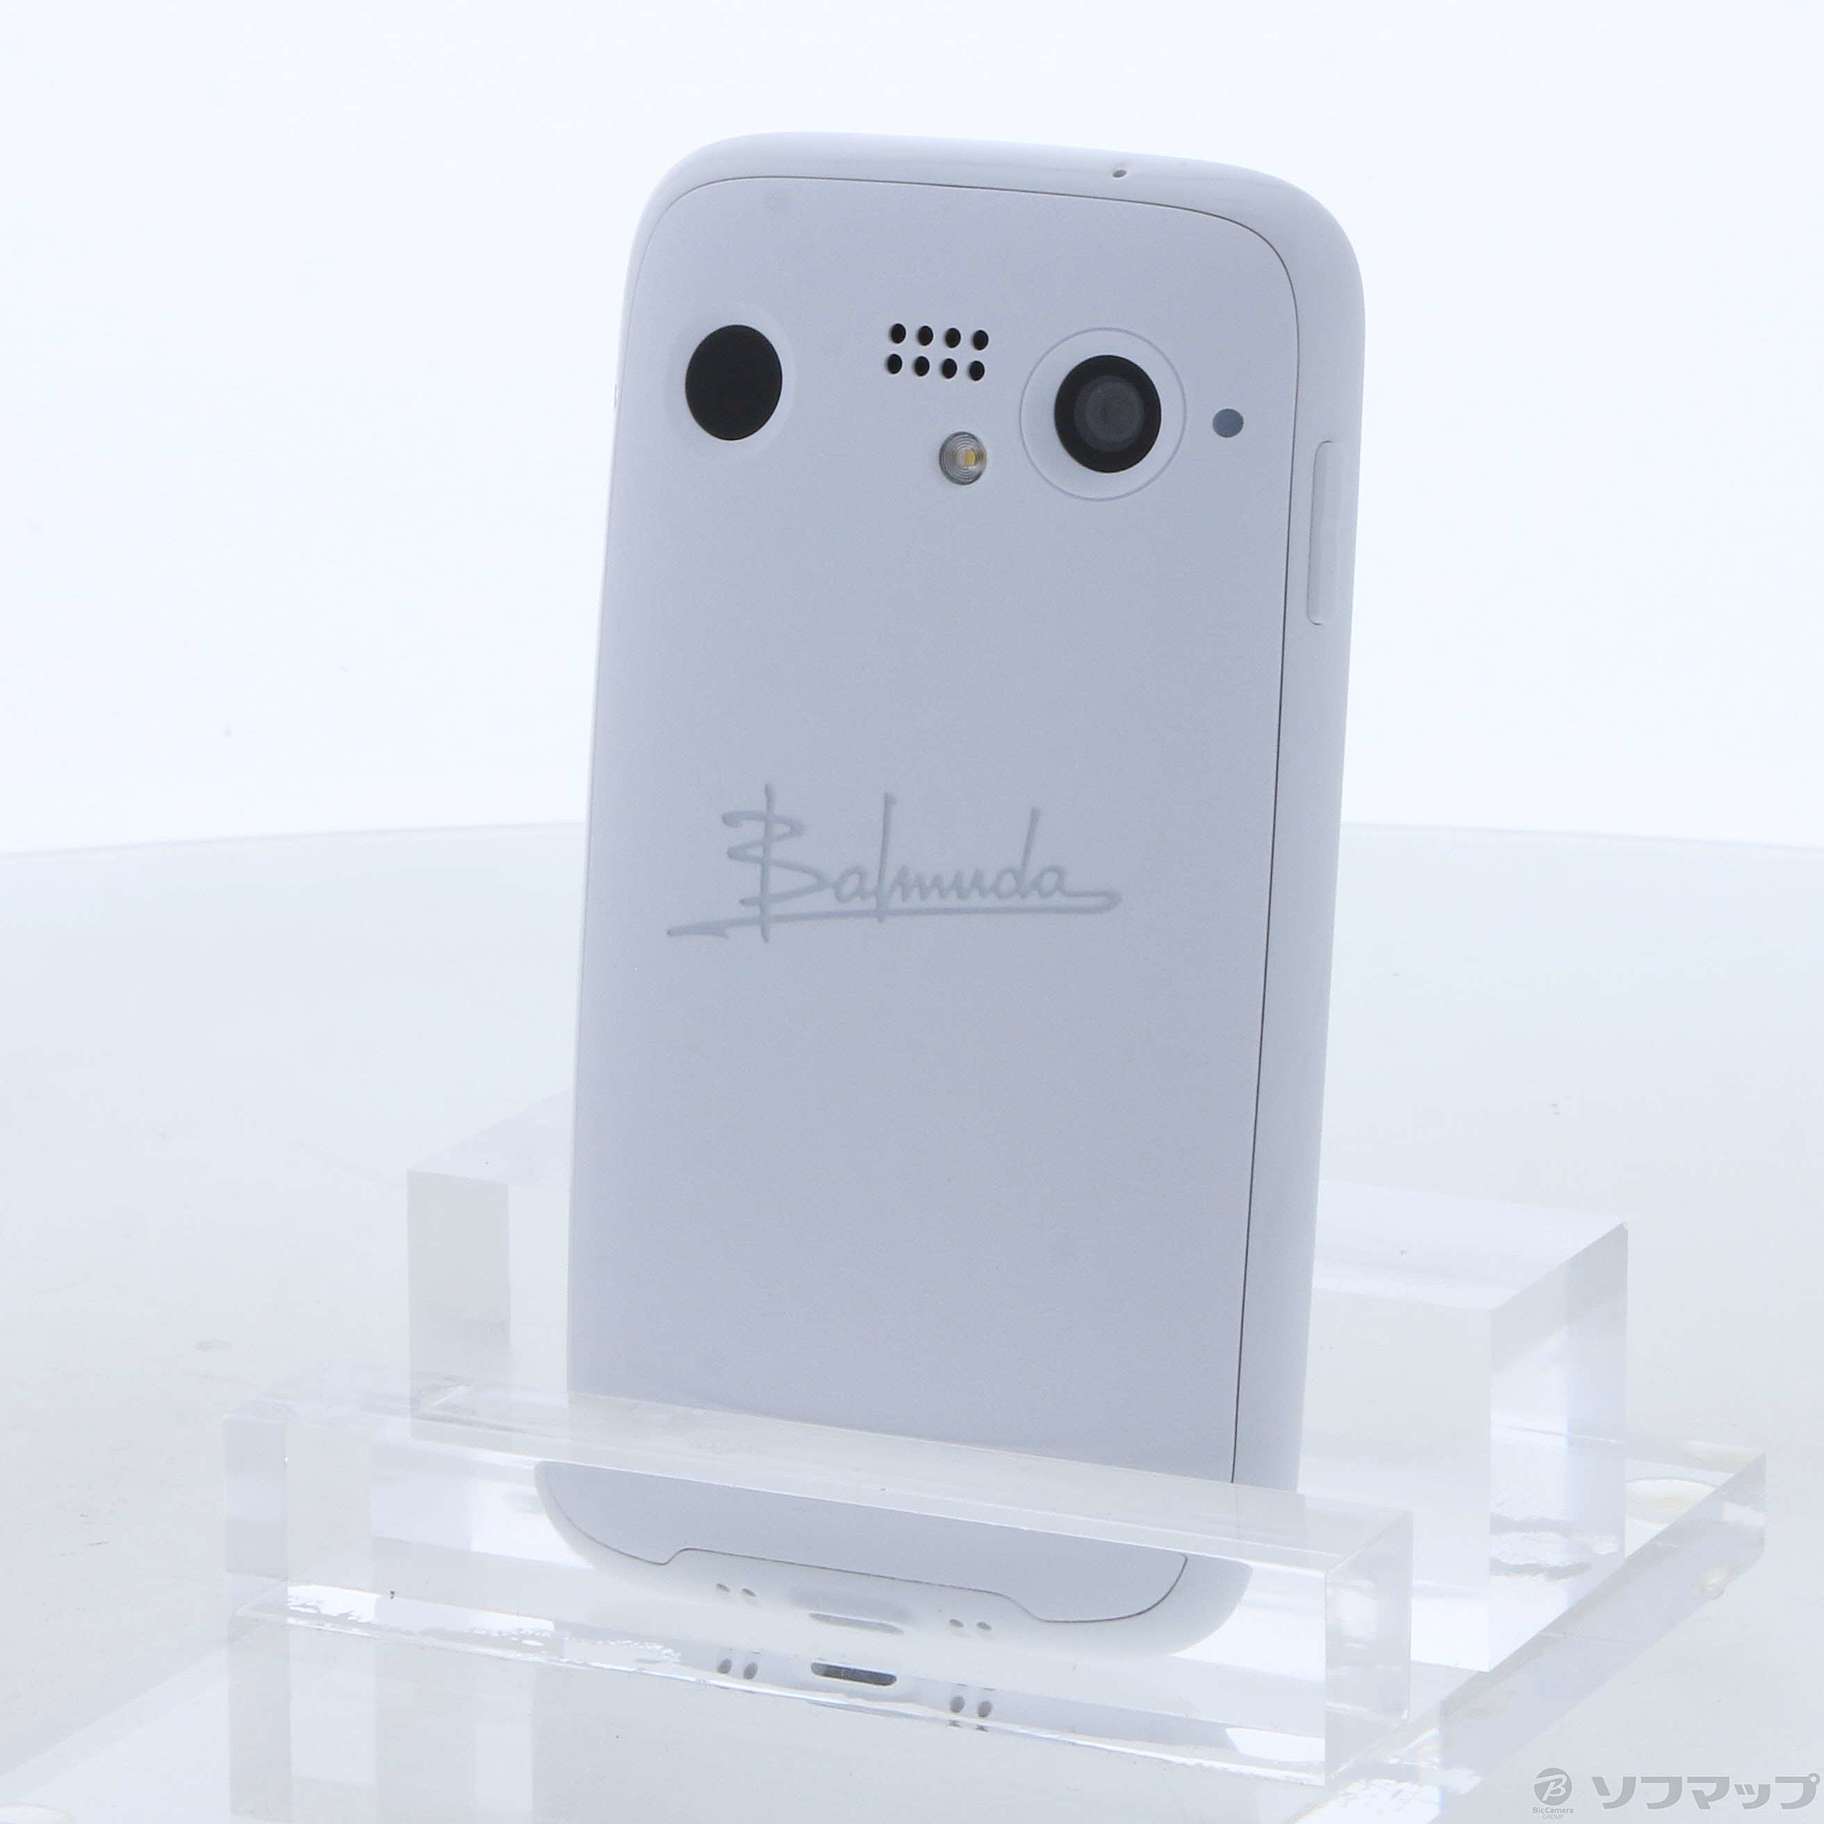 スマートフォン/携帯電話 スマートフォン本体 全商品オープニング価格 BALMUDA Phone ホワイト SoftBank版SIMフリー 